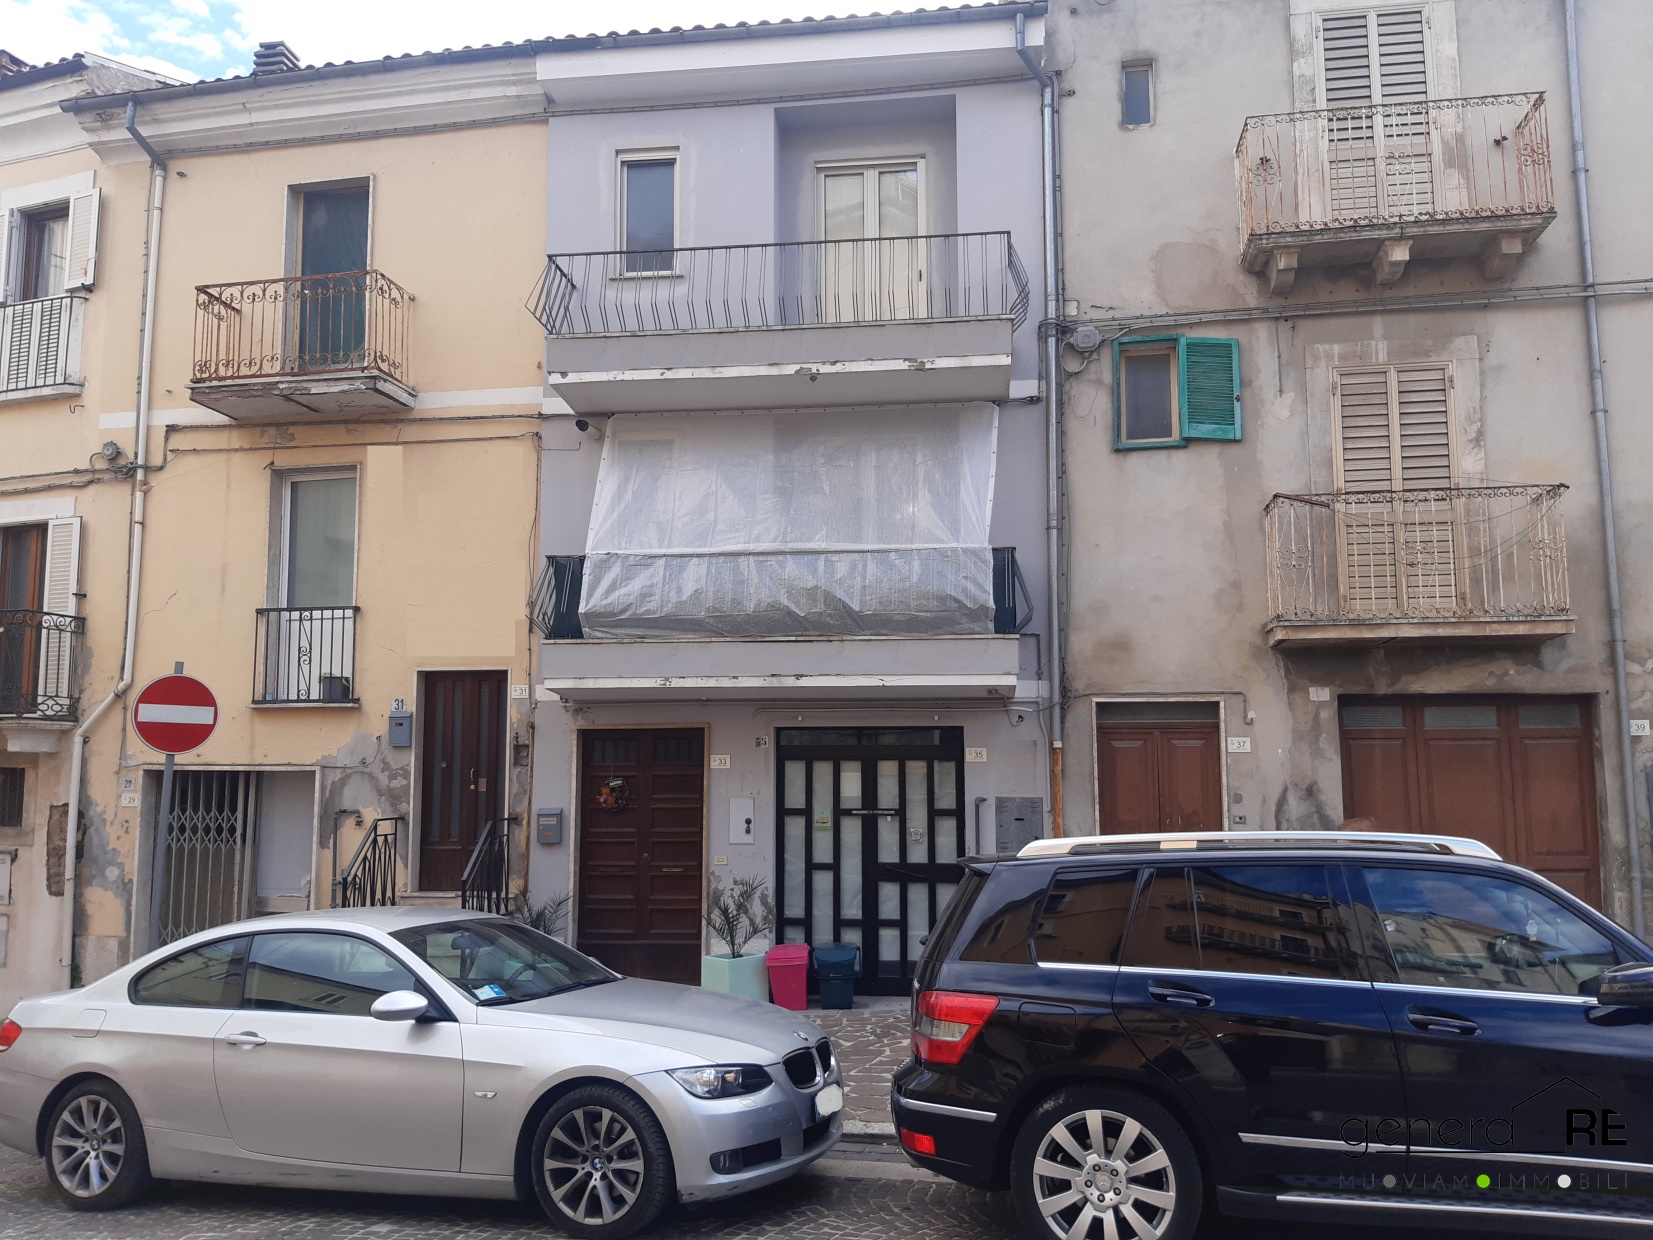 Villa in vendita a Tocco da Casauria, 4 locali, prezzo € 75.000 | PortaleAgenzieImmobiliari.it